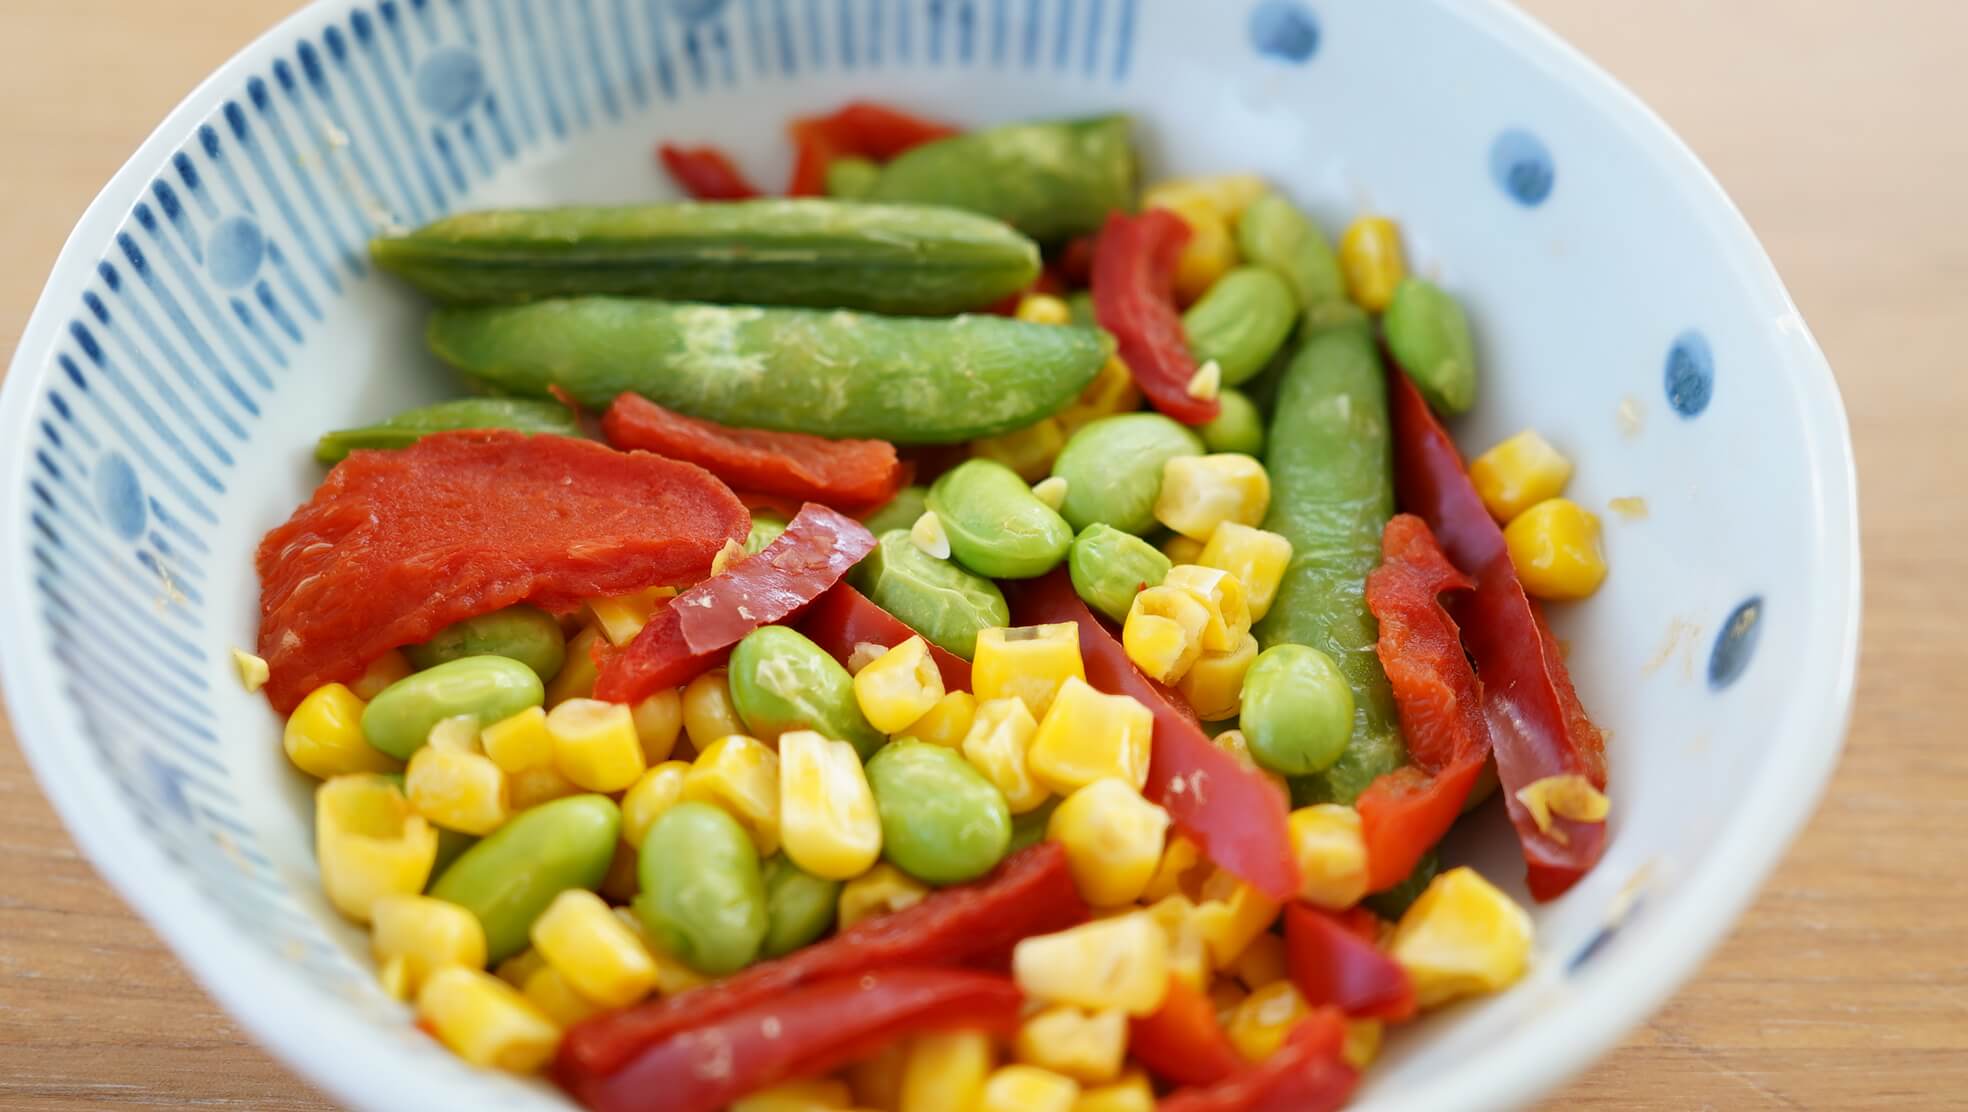 ピカールの冷凍食品「温野菜ミックス」の拡大写真